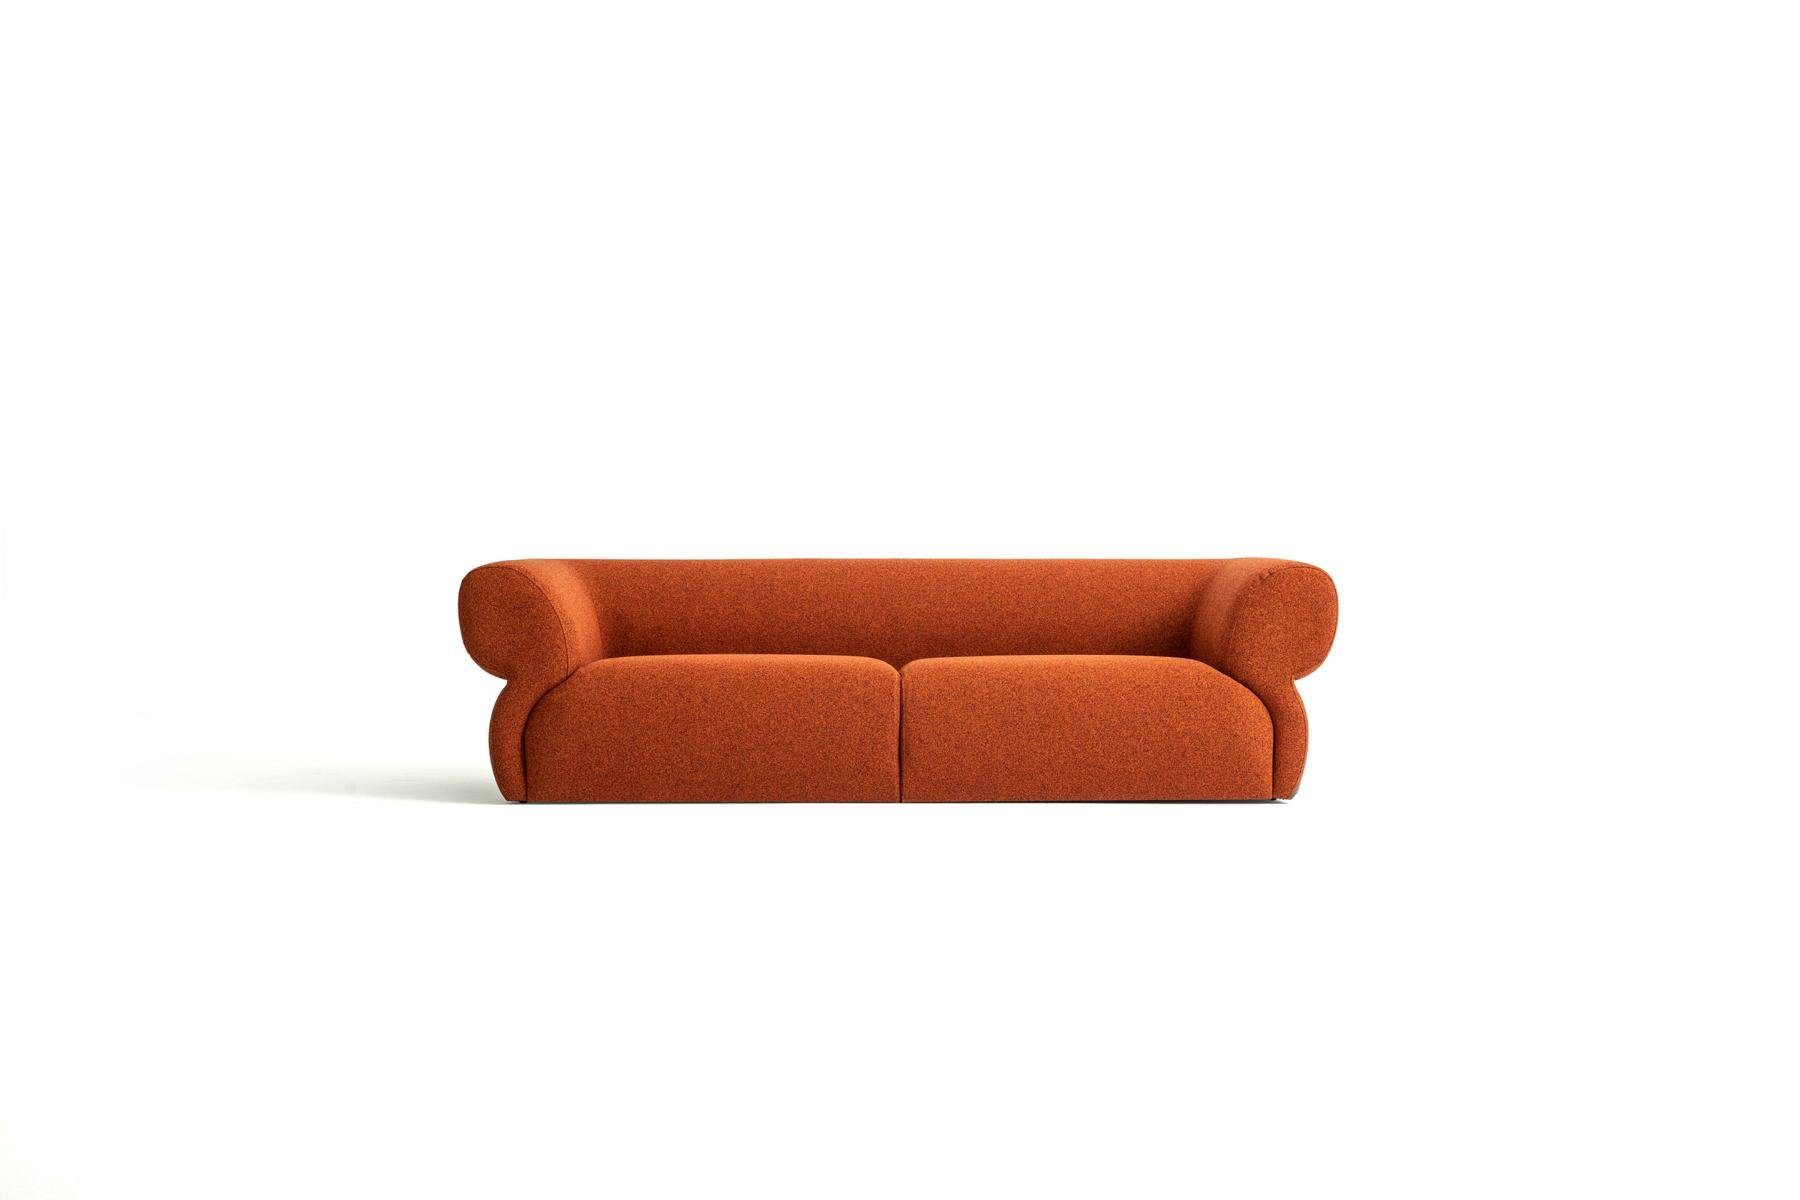 Möbel Sofa Made Luxus 3-Sitzer Sitzer Europe JVmoebel Wohnzimmer Neu, Design in Orange 250cm 3 Polstersofa